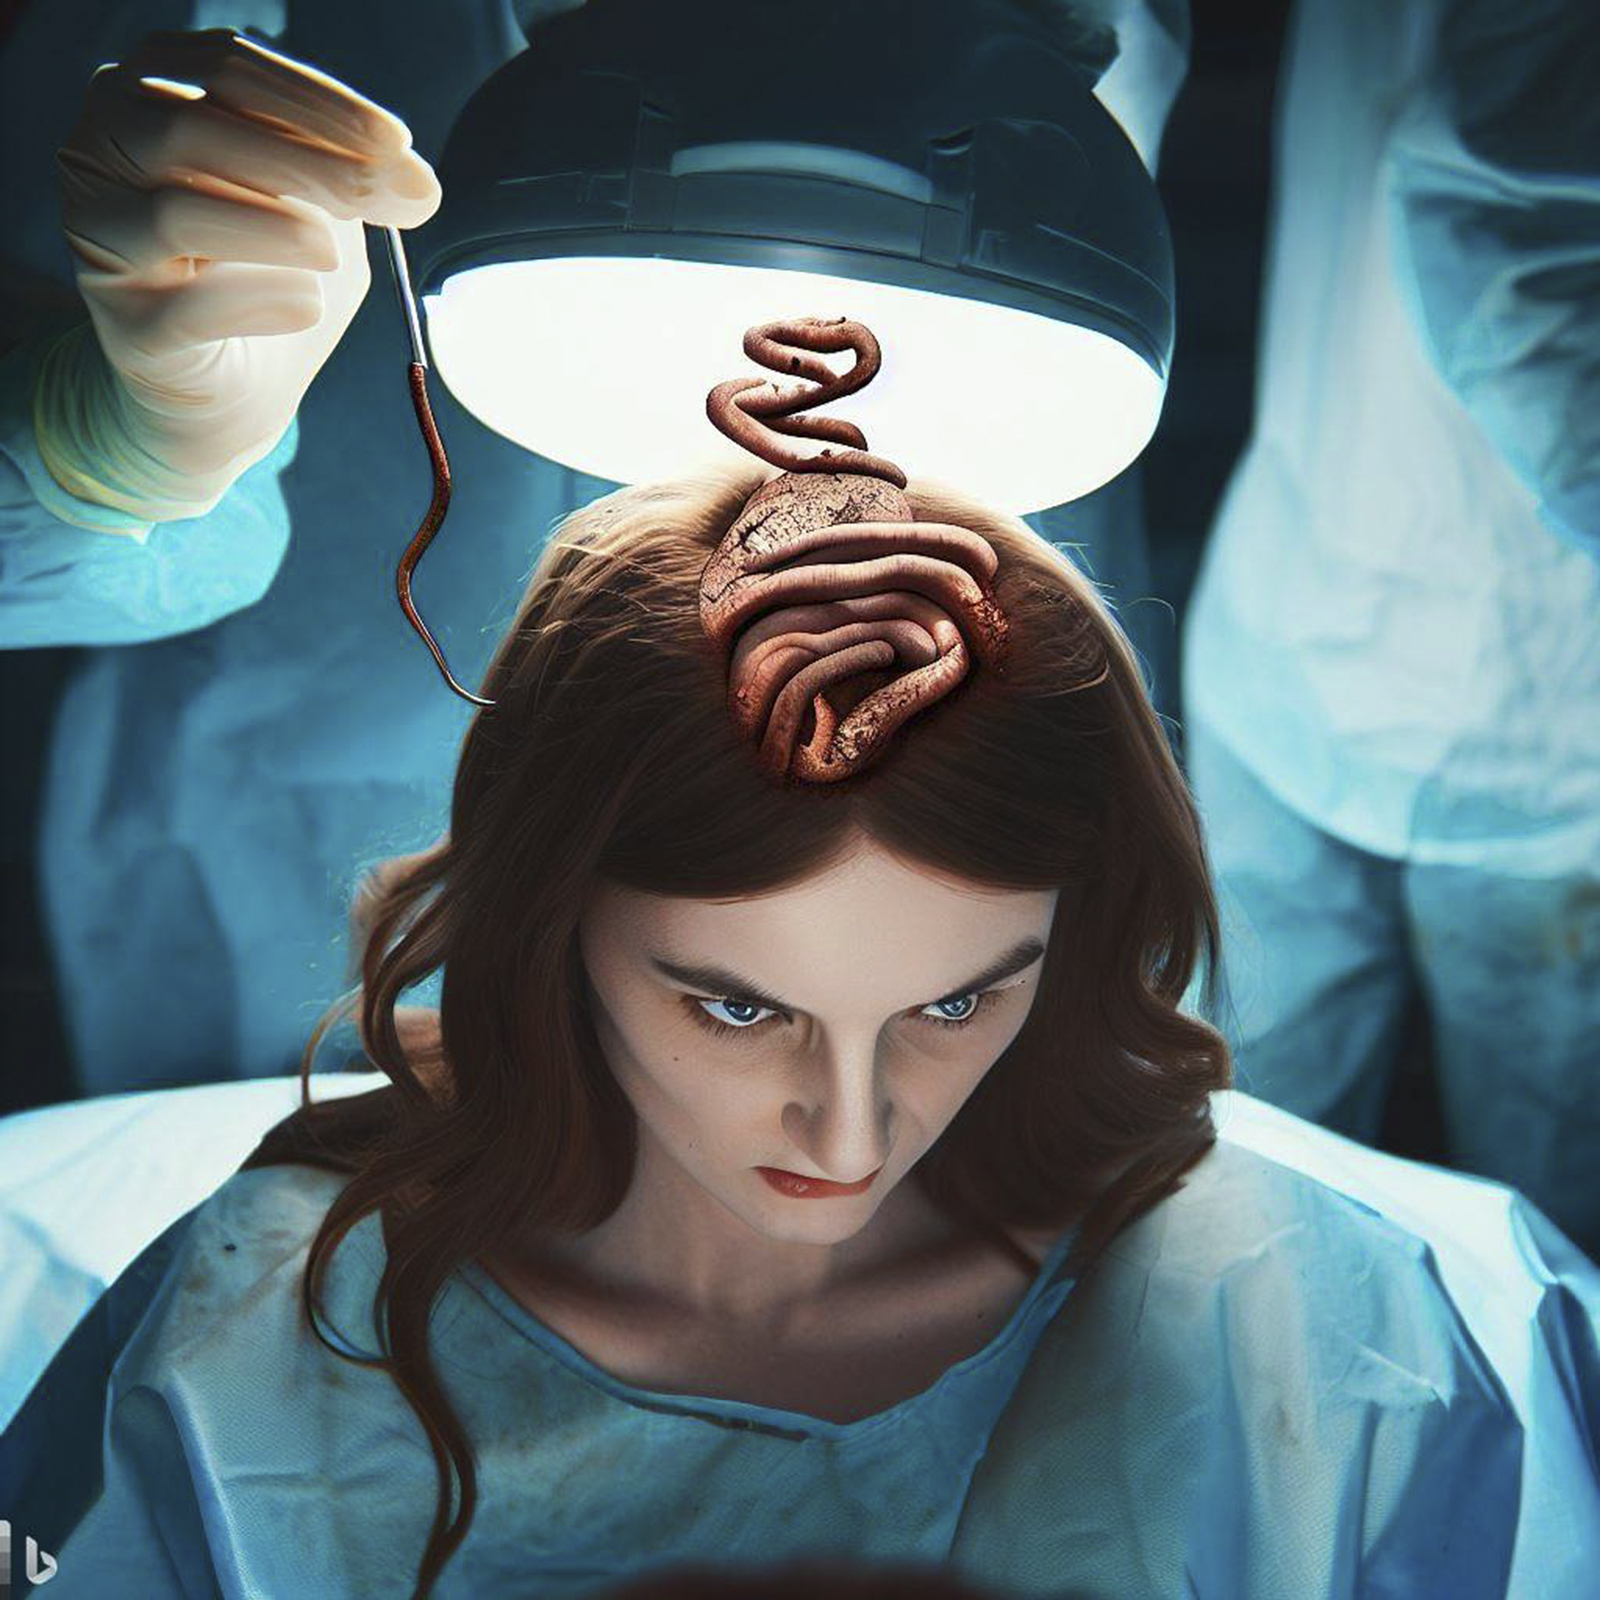 Le ver retrouvé dans le cerveau de cette patiente infecte habituellement les pythons. © Bing Image Creator